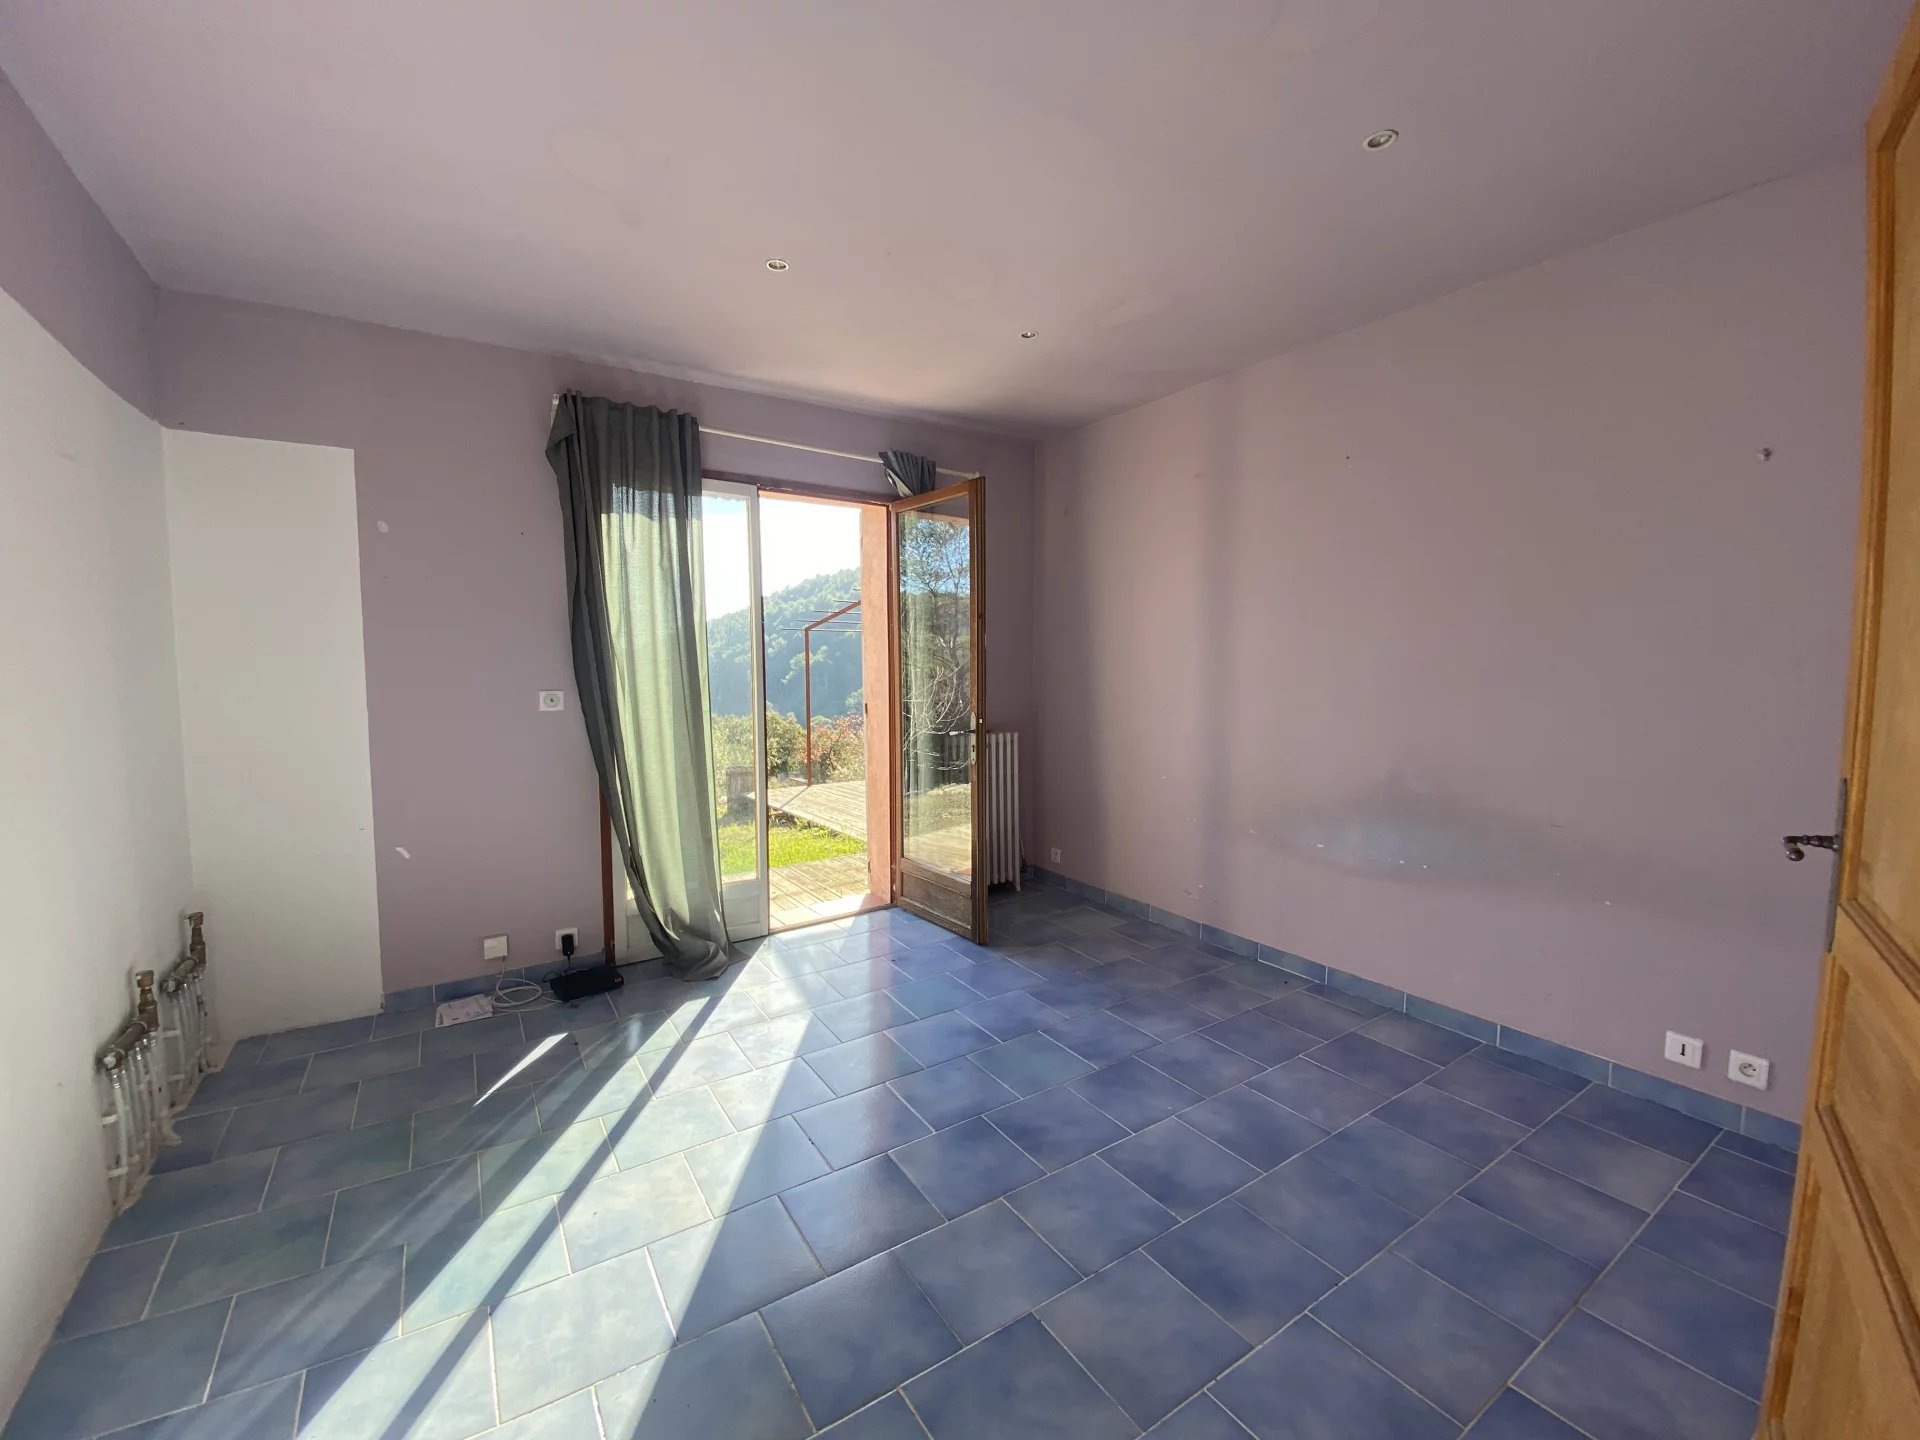 ENTRECASTEAUX - Atypische villa met 5 kamers op een perceel van meer dan 4000m2 met garage en werkplaats.